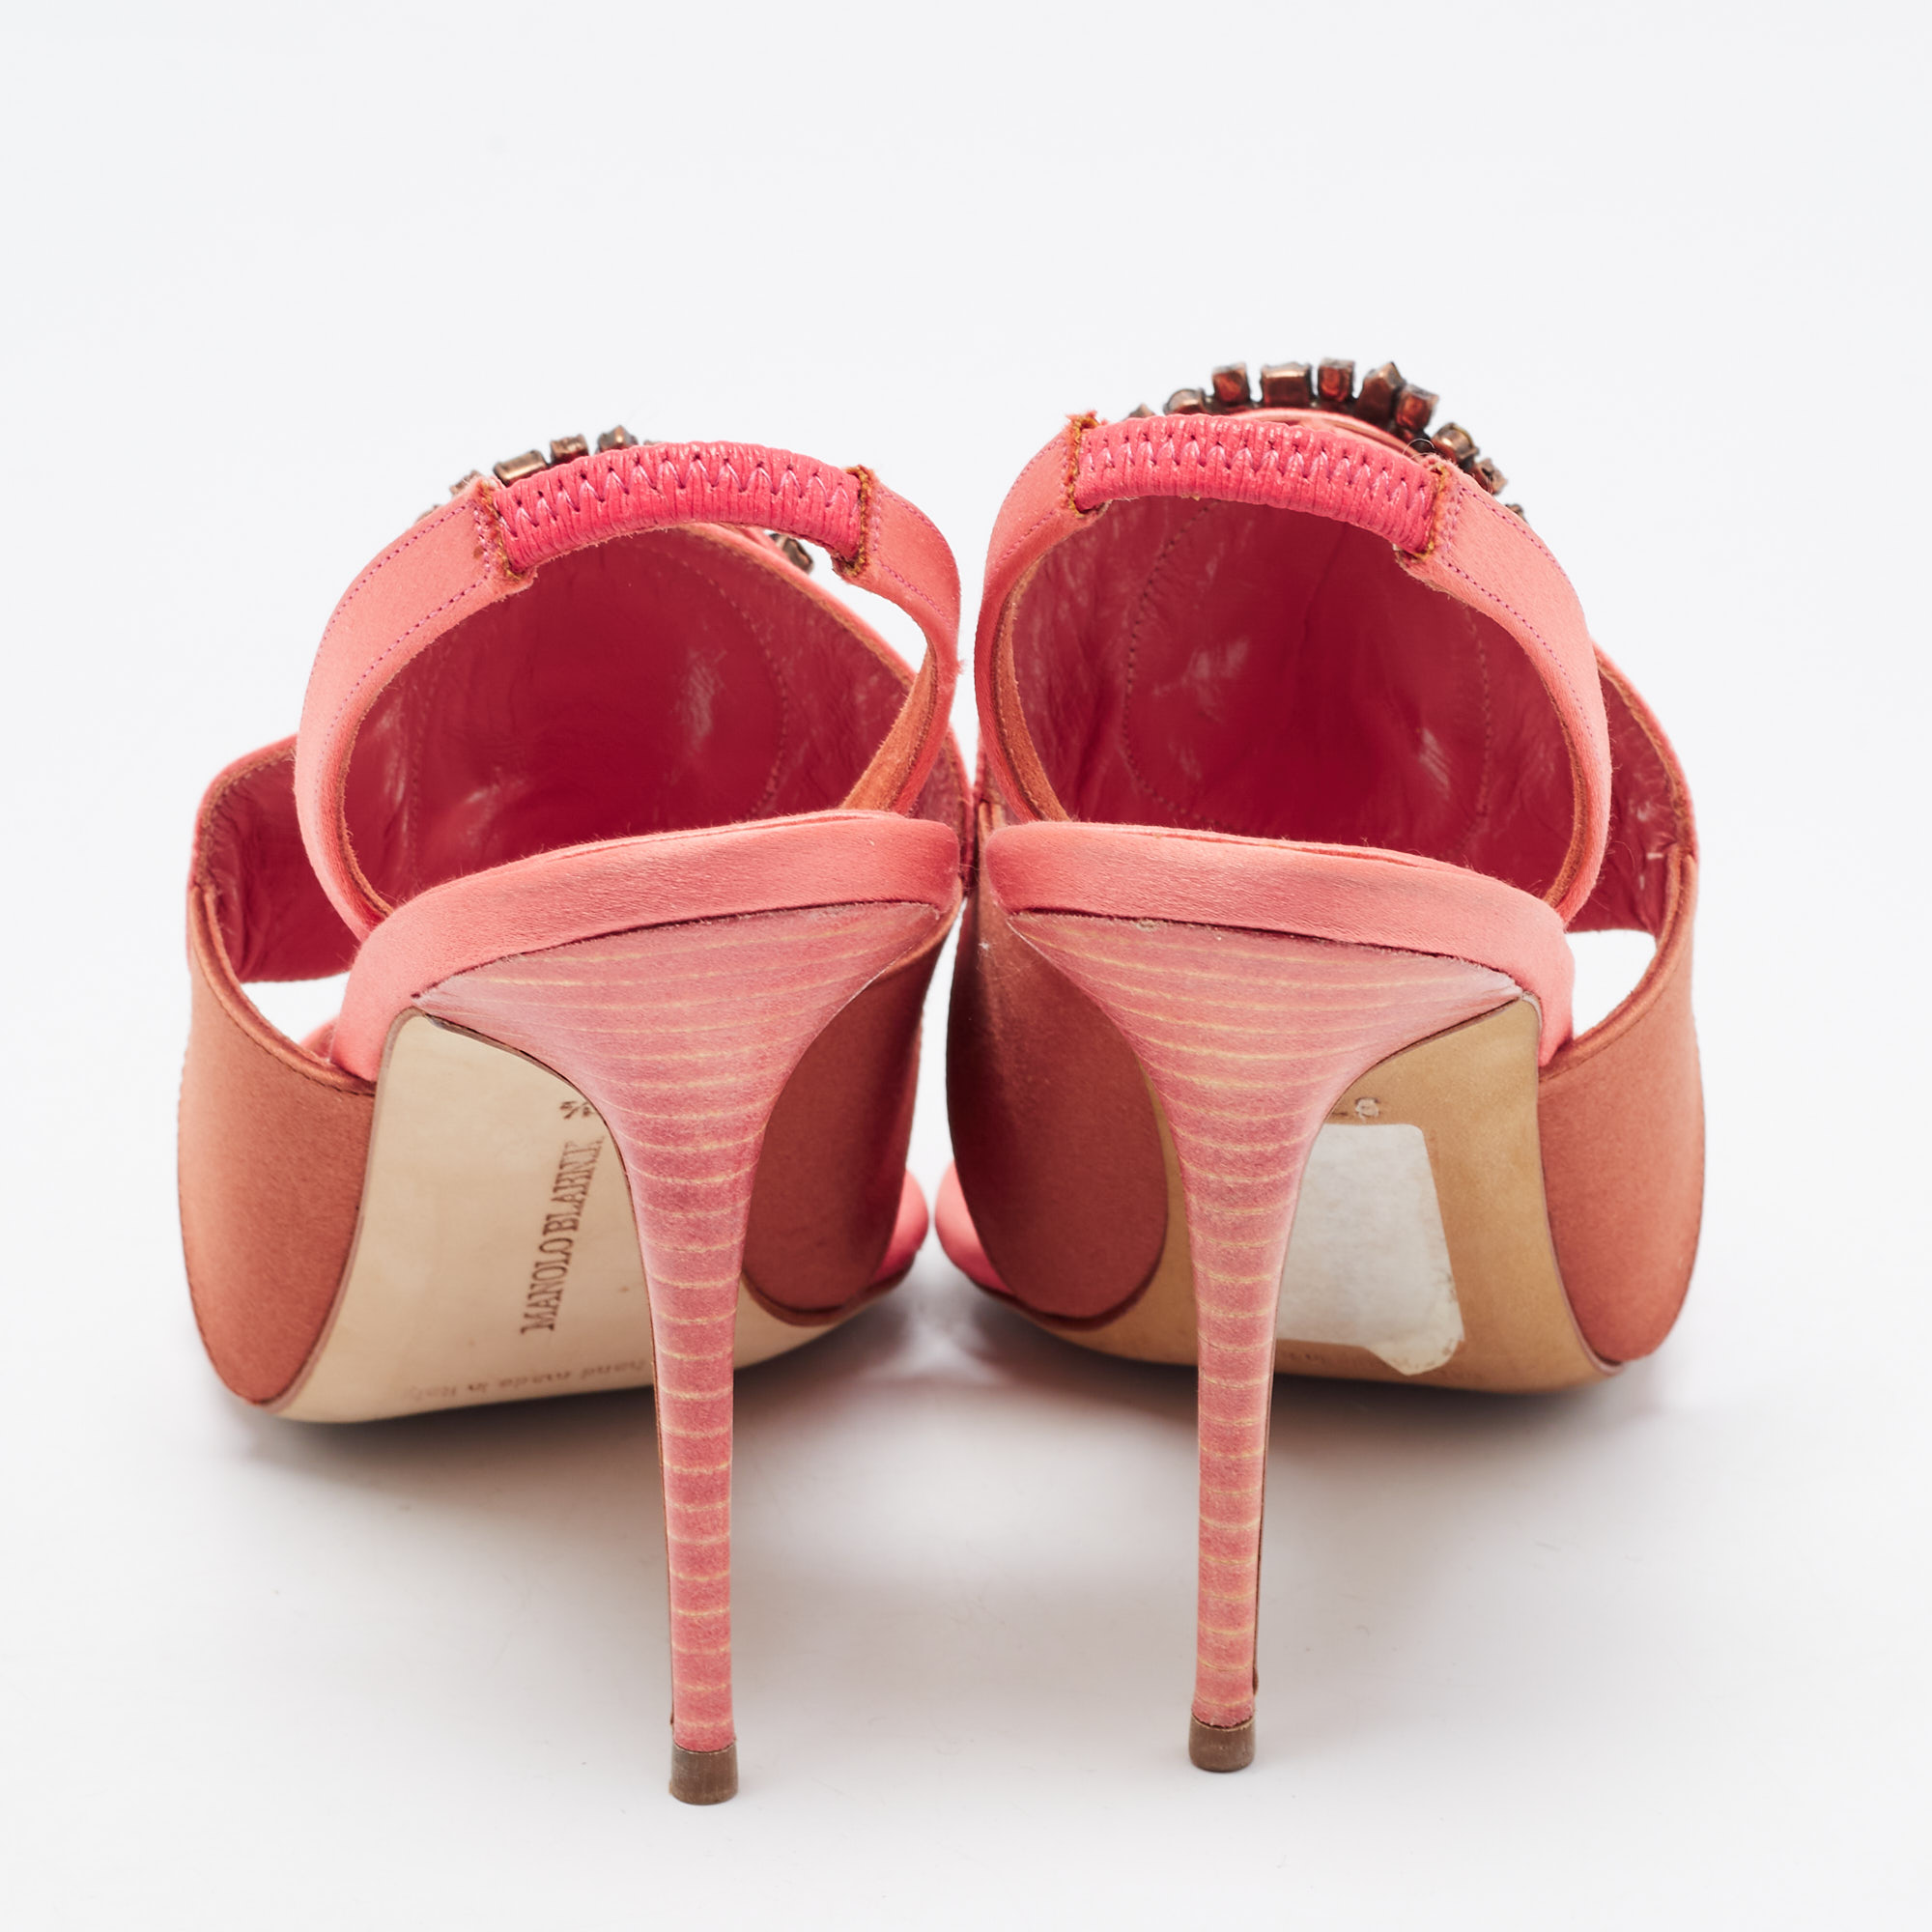 Manolo Blahnik Pink/Brown Satin Crystal Embellished Ankle Strap Sandals Size 37.5